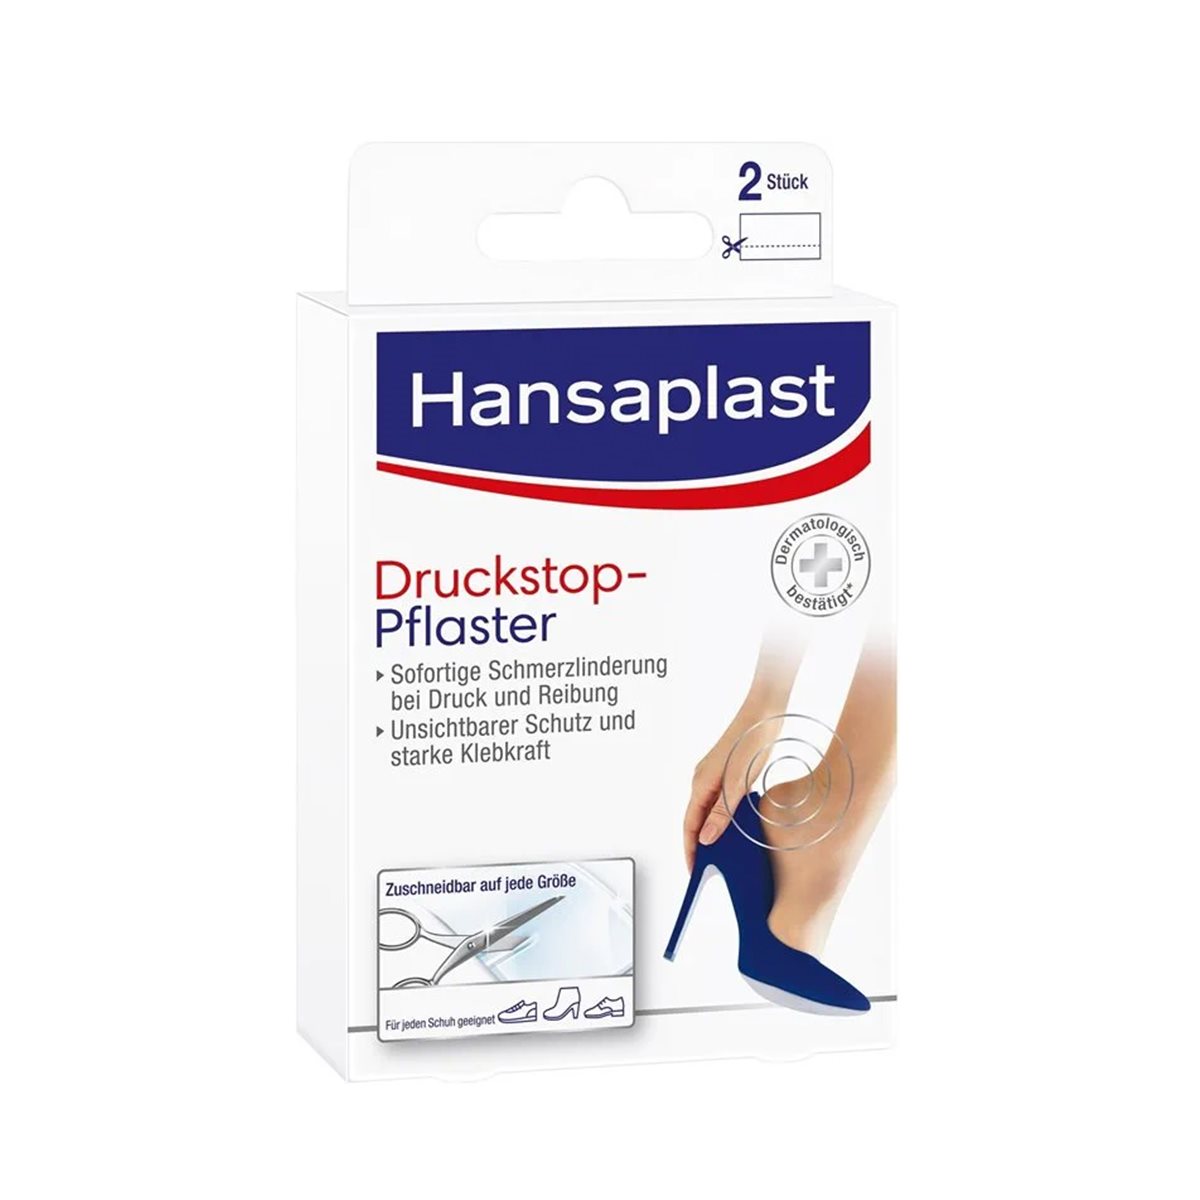 Hansaplast Druckstop